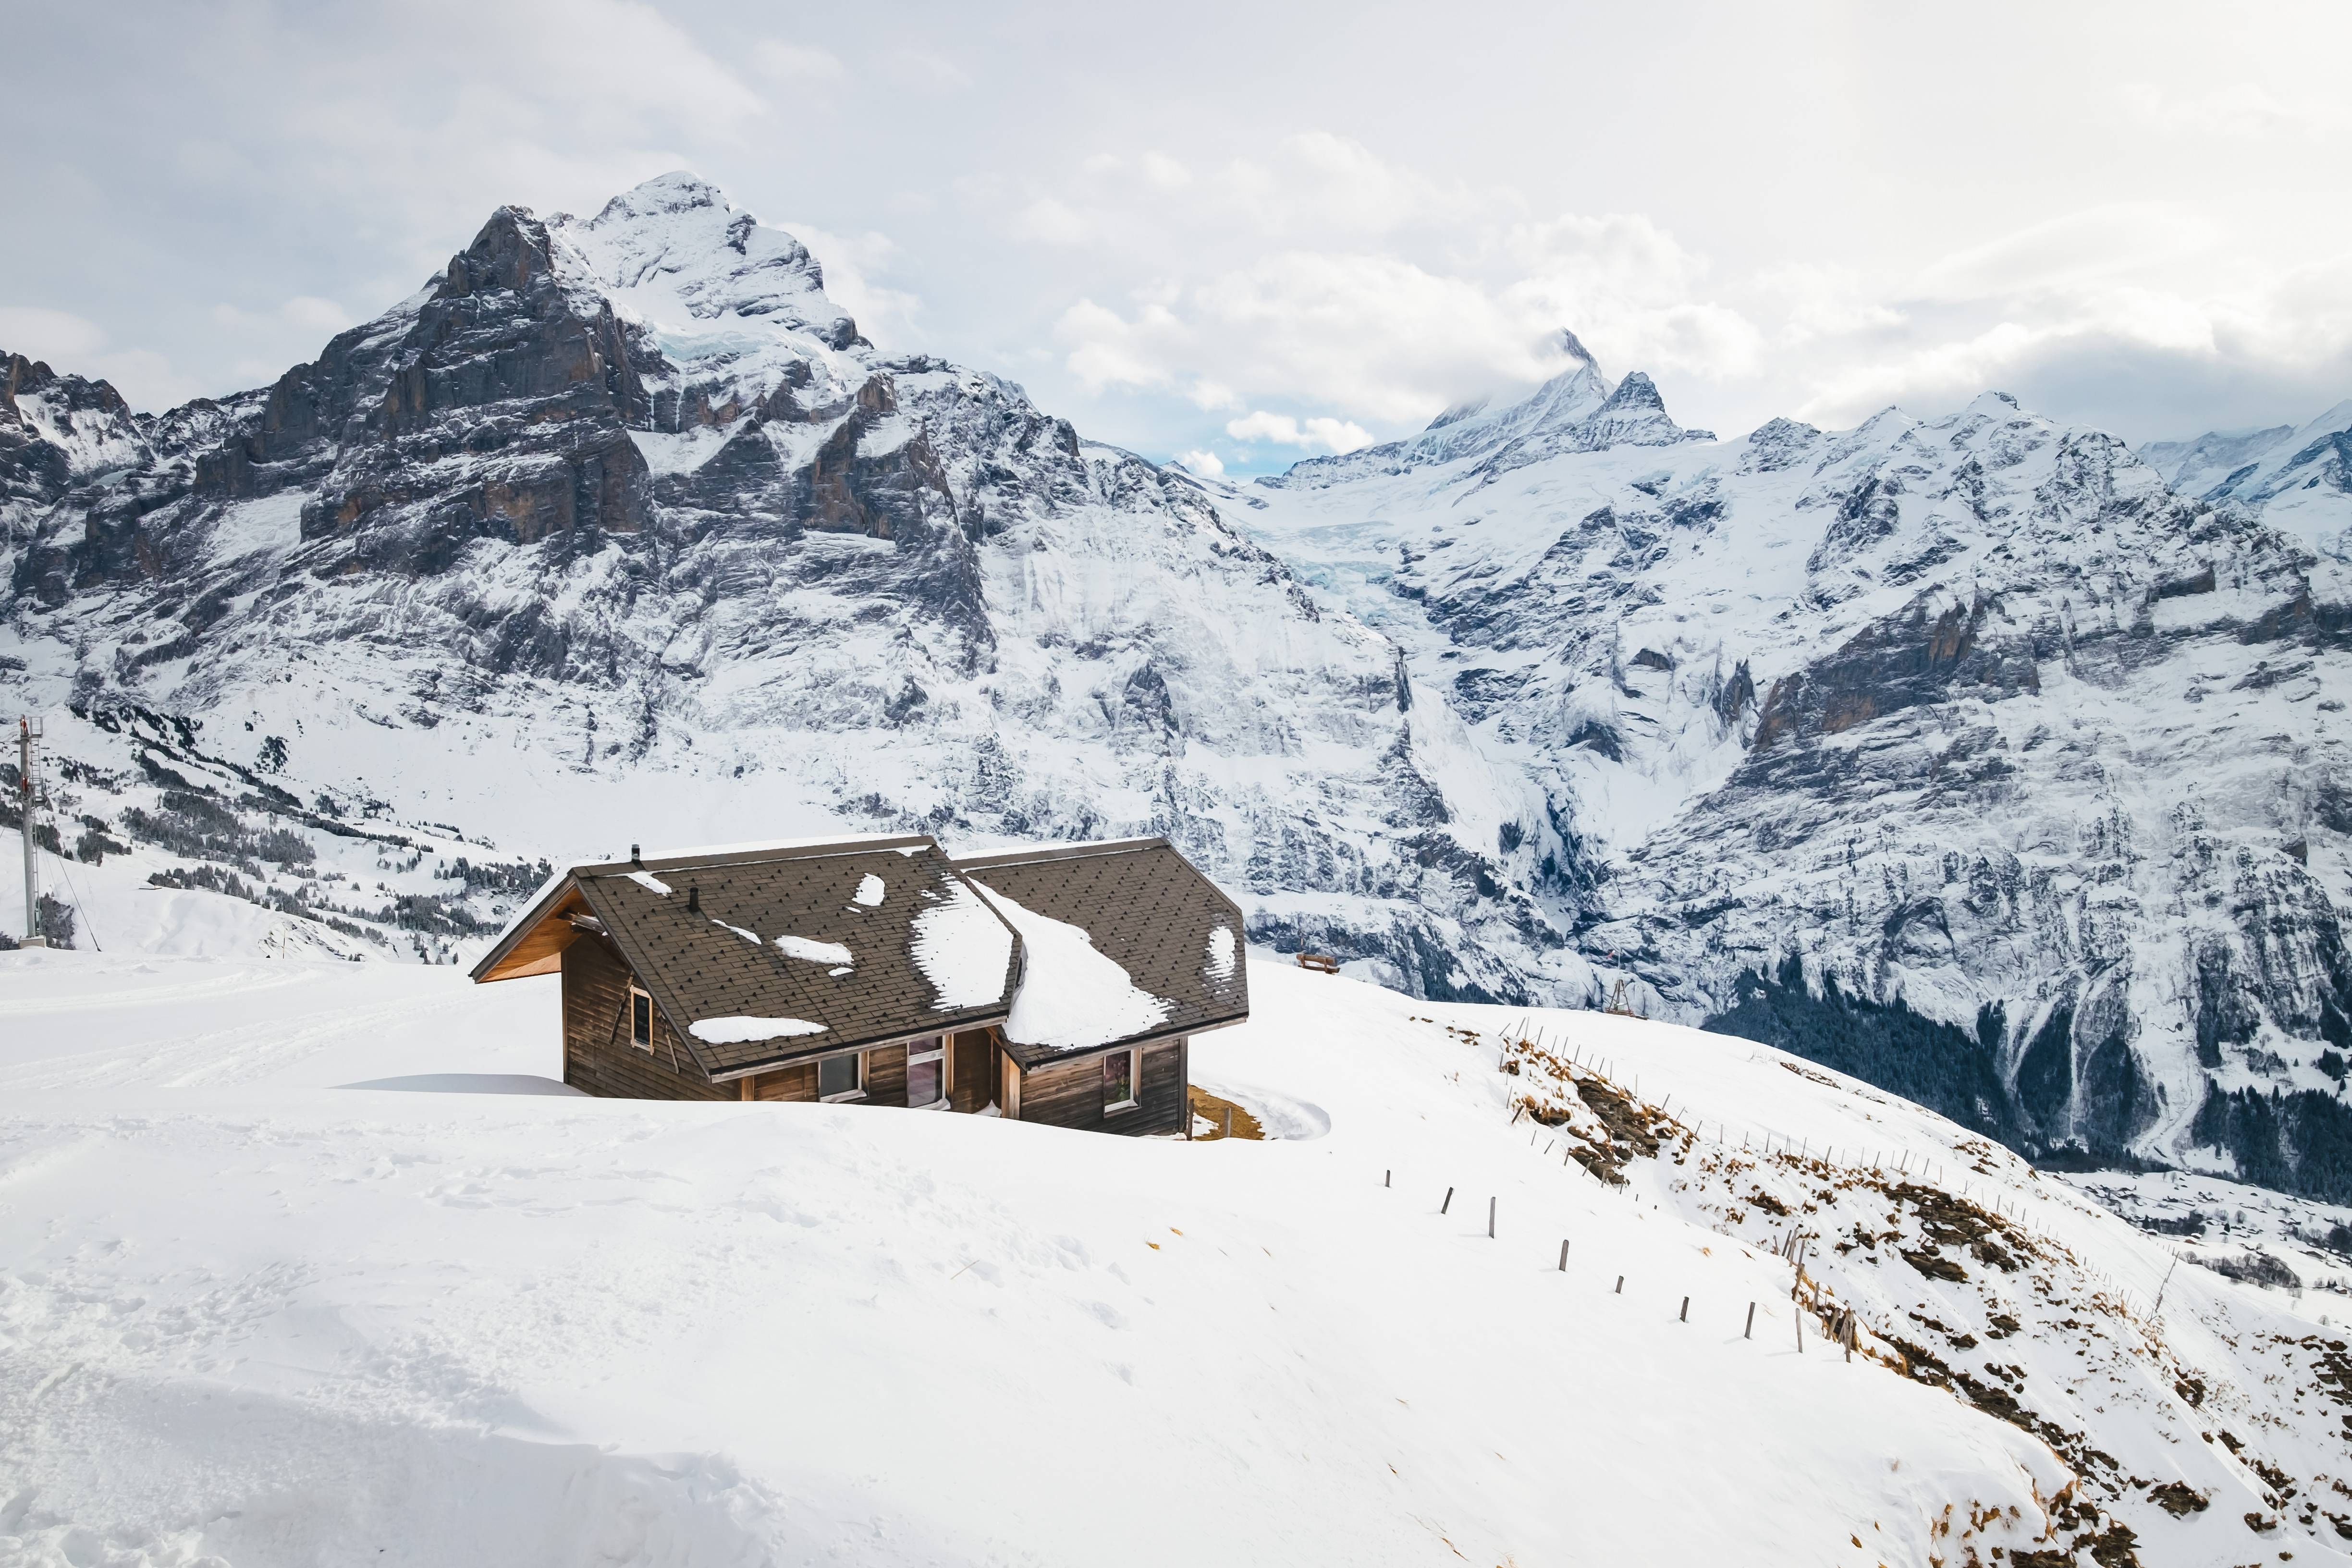 アルプス山脈の絶景が眺められる山小屋 スイス の写真素材 ぱくたそ